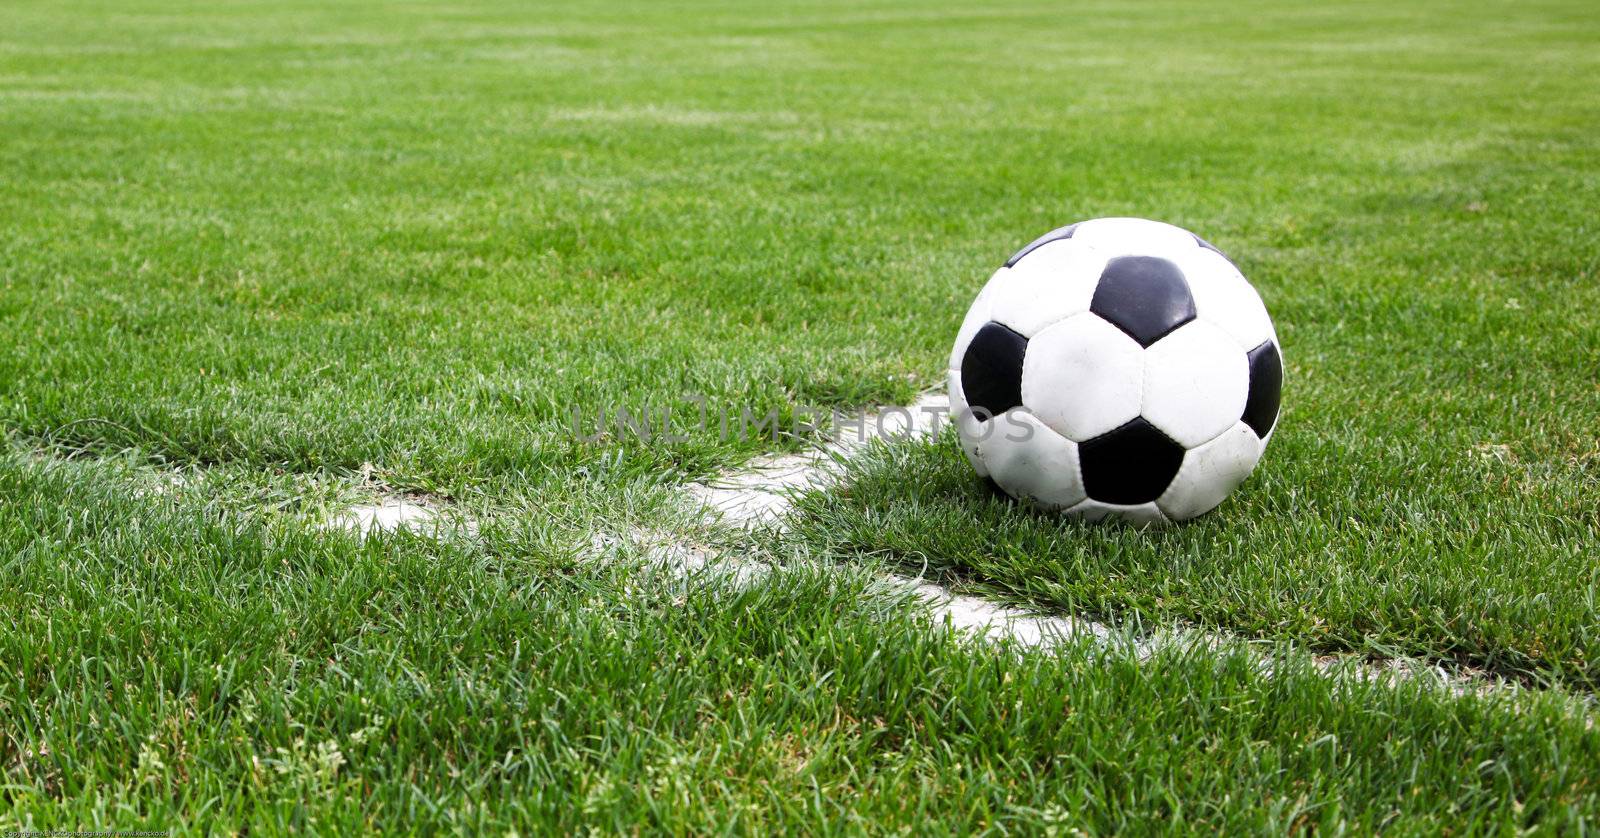 Soccer Ball Closeup by nfx702